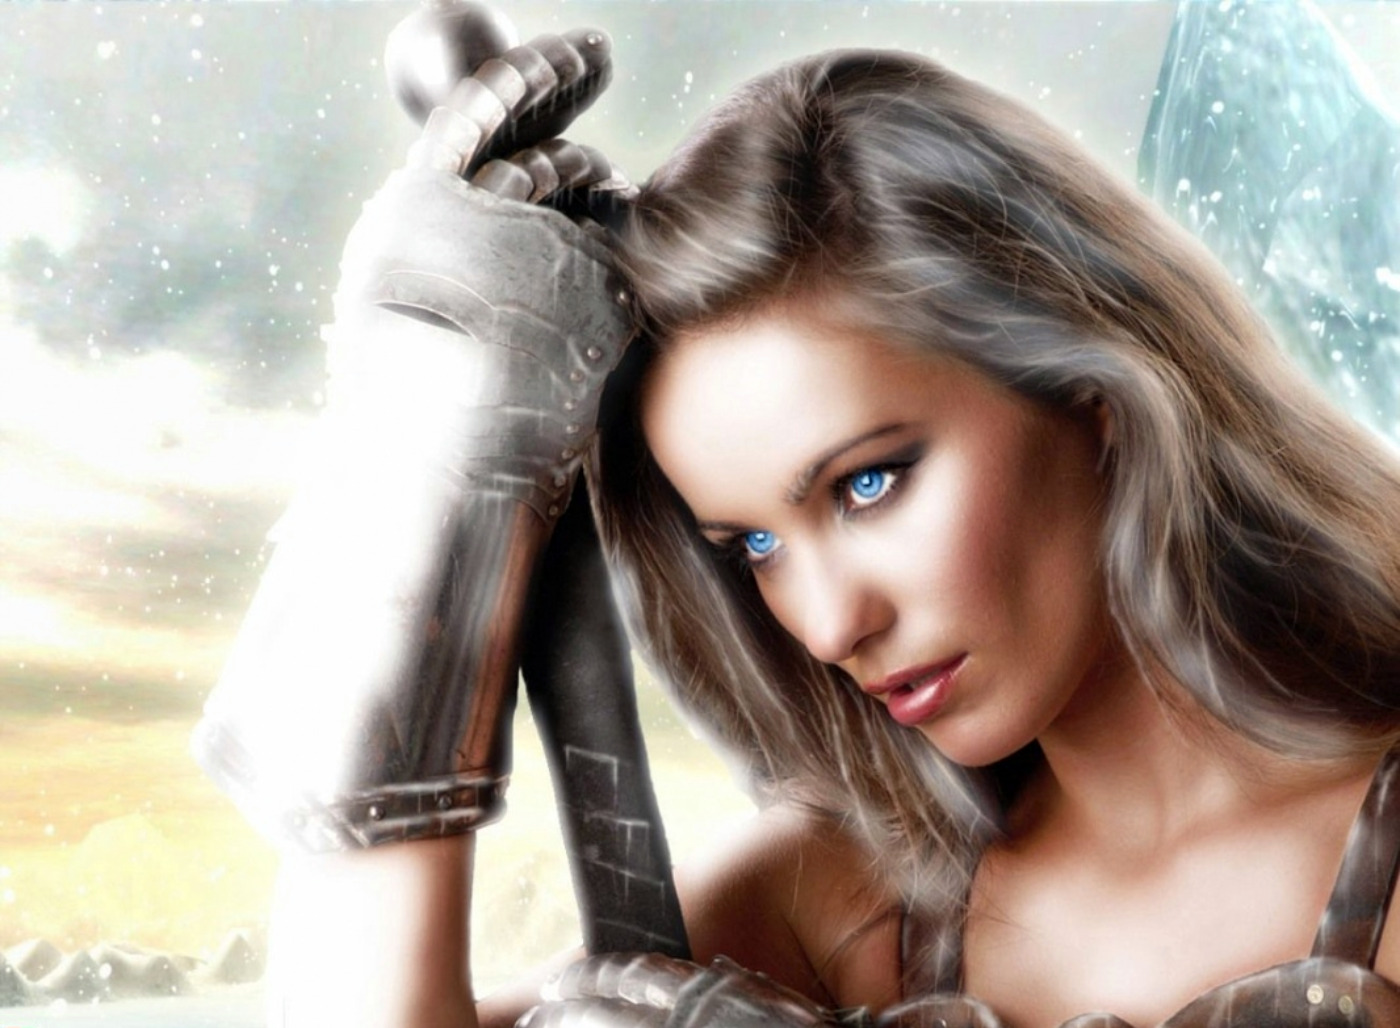 Gauntlet Snow Sword Warrior Woman Woman Warrior 1400x1028